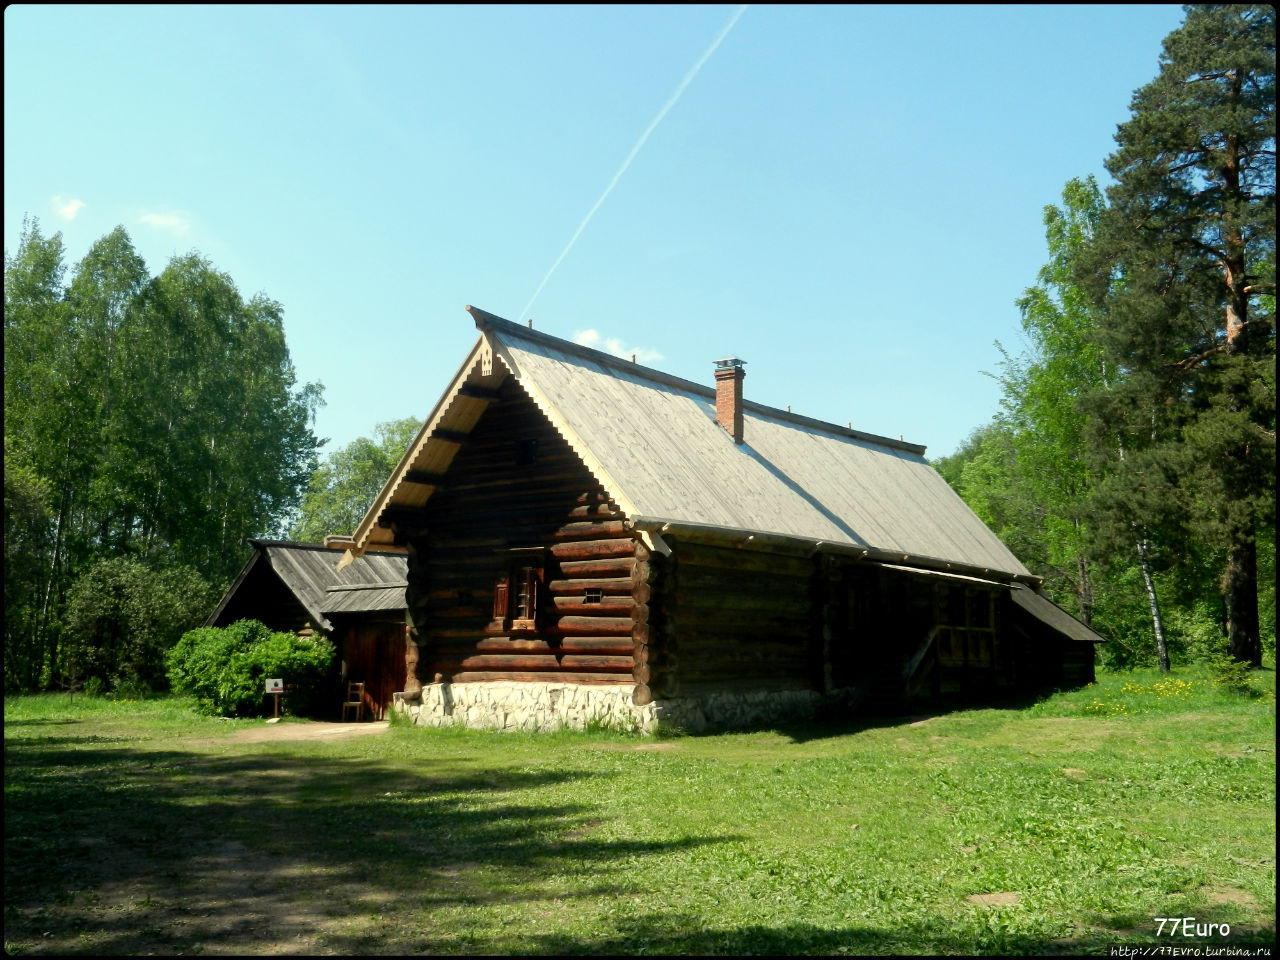 Музей деревянного зодчества.
Изба Кокориных Истра, Россия